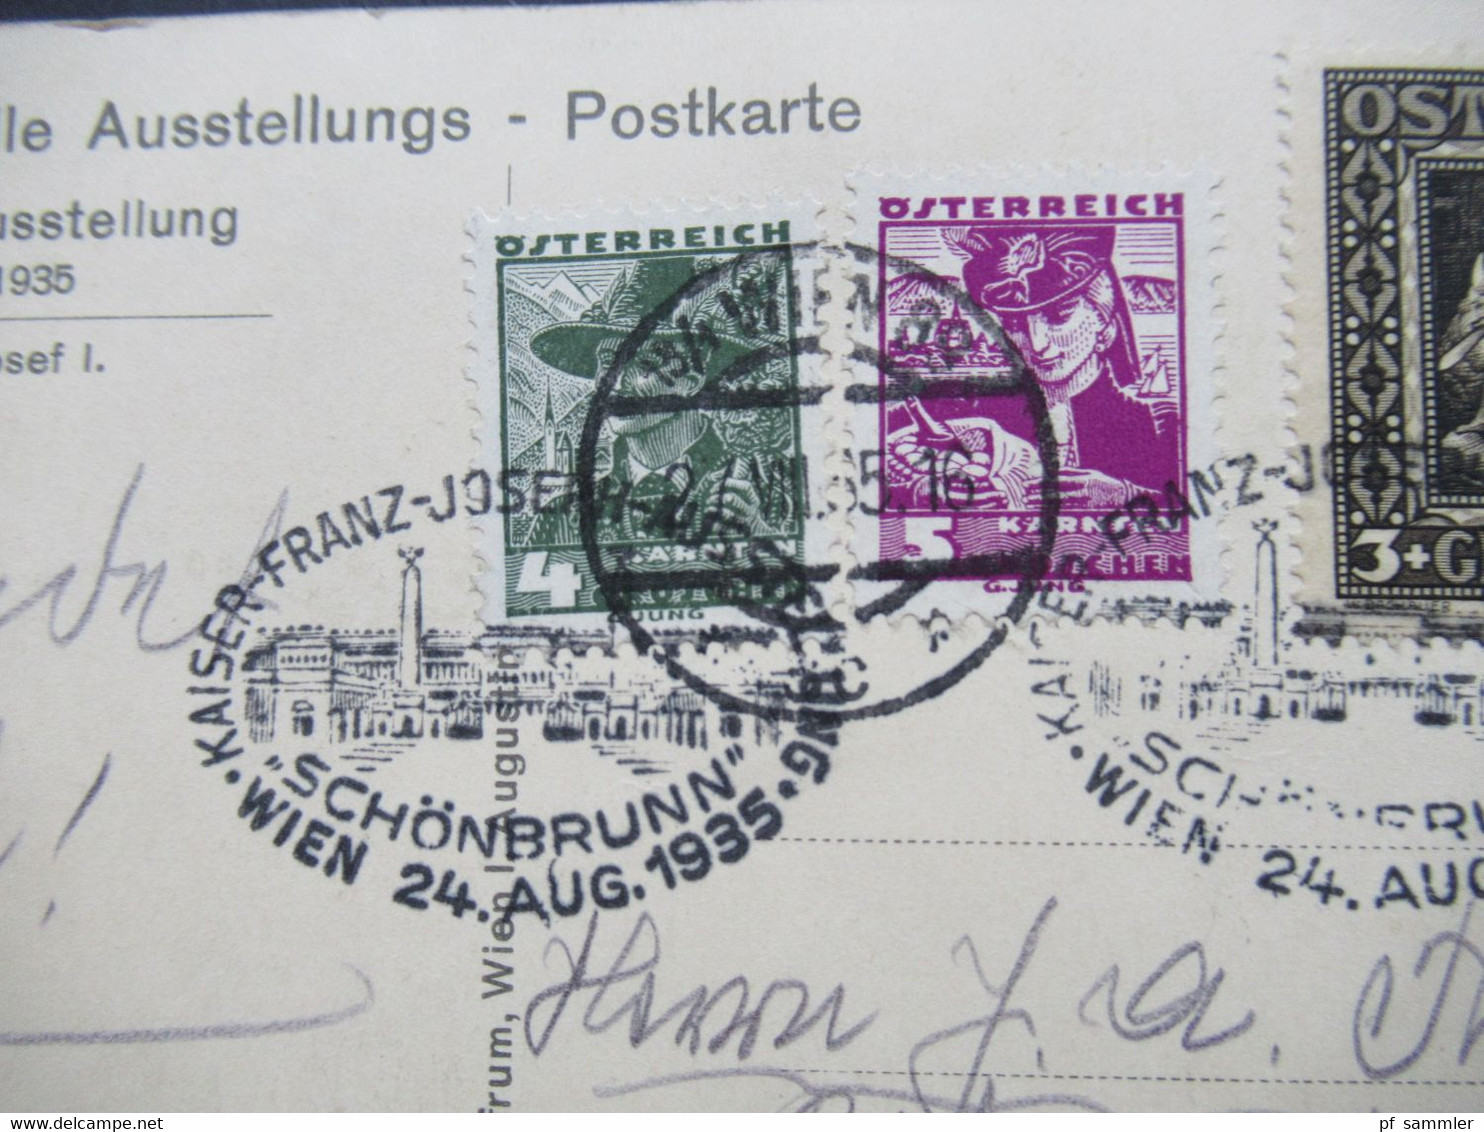 1935 Offizielle PK kaiser Franz Josef Ausstellung mit Vignette und Sonderstempel MiF mit Nibelungensage Nr. 488